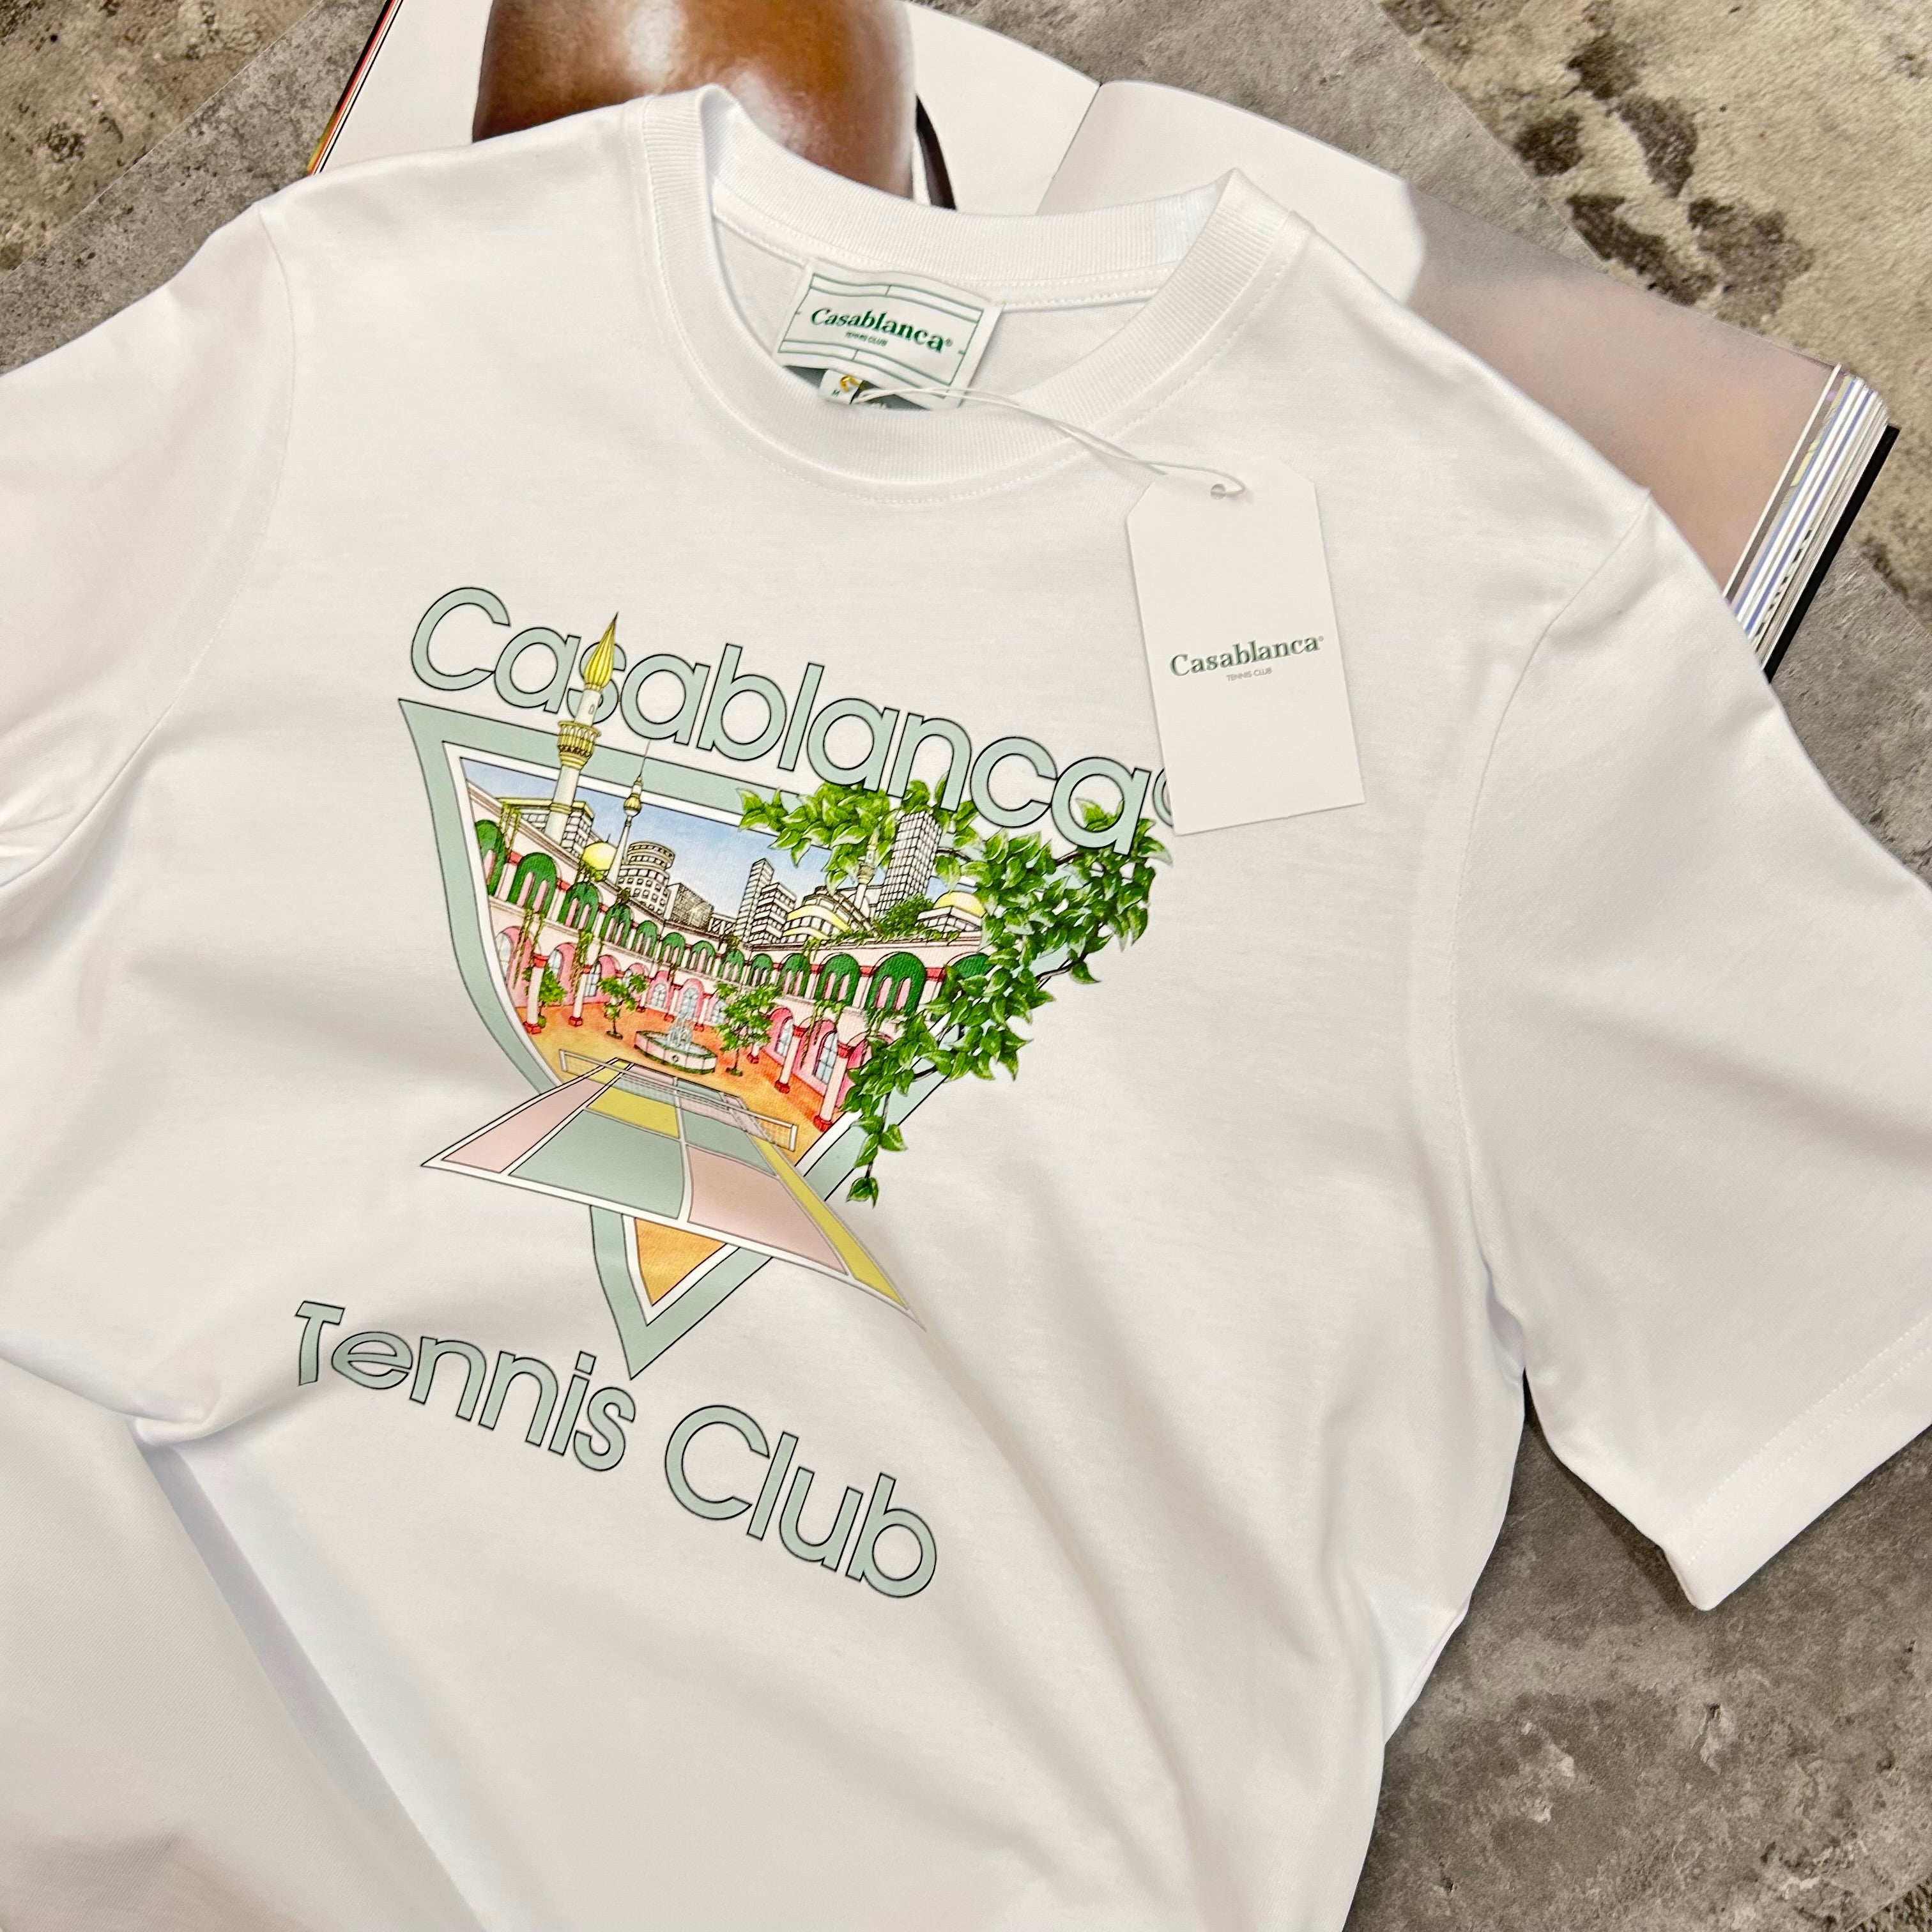 CASABLANCA - TENNIS CLUB T-SHIRT - WHITE/MINT